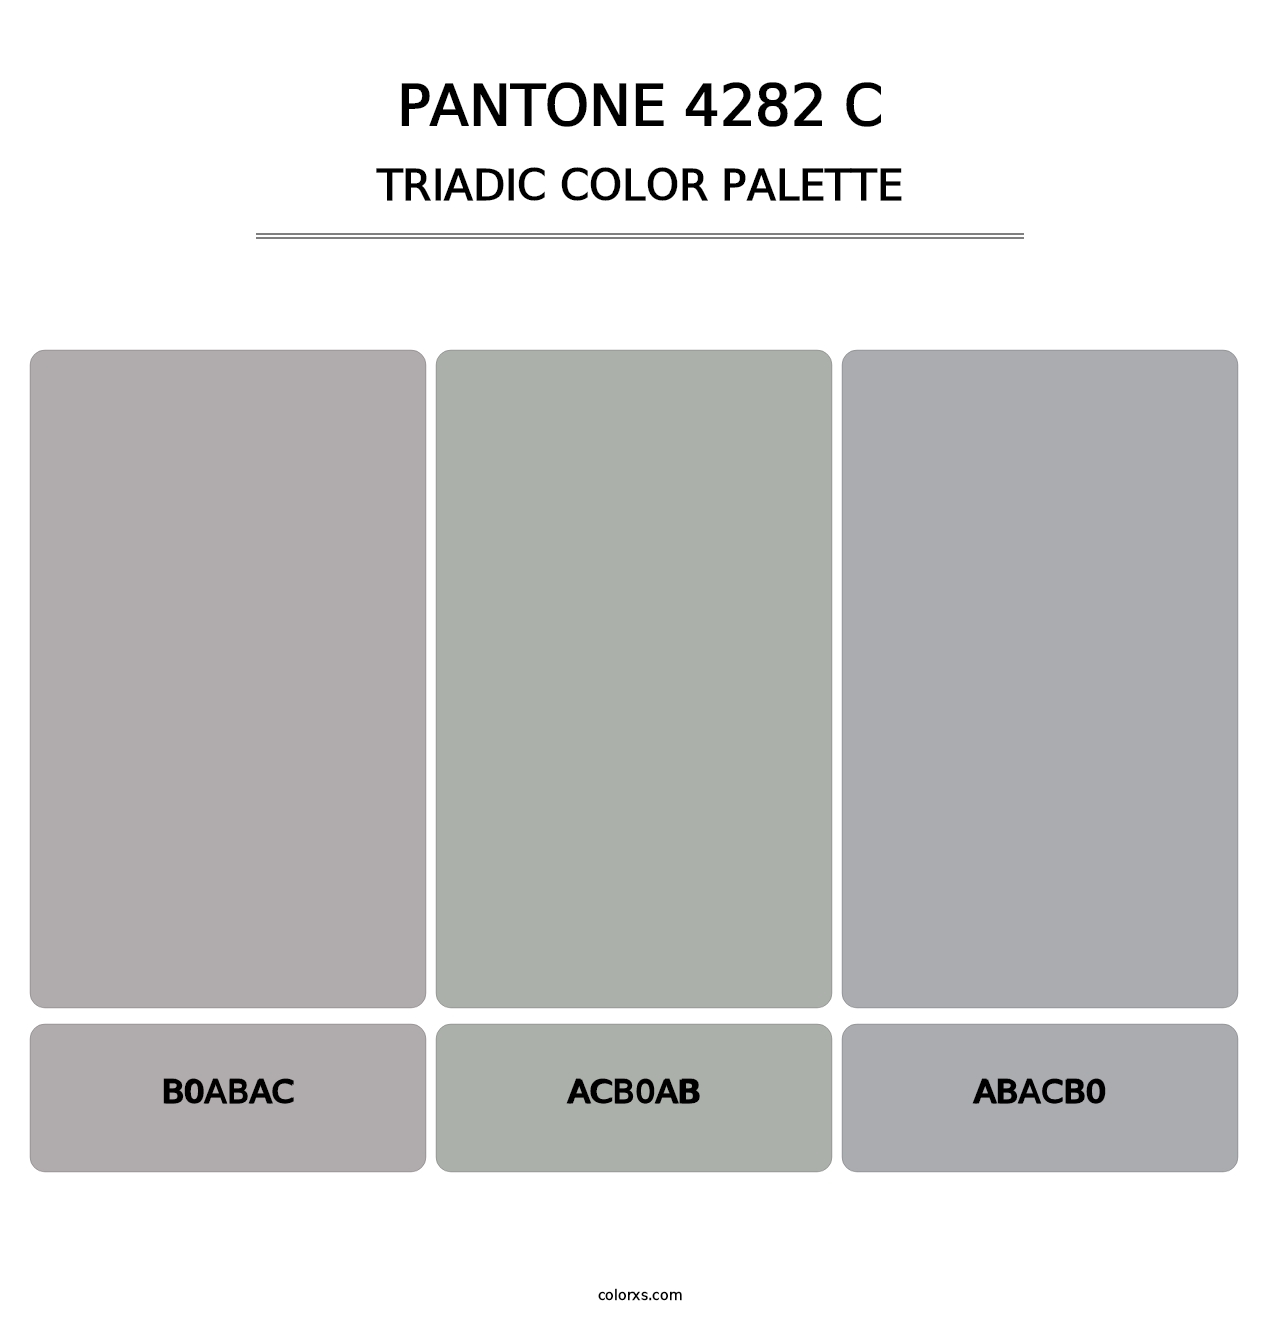 PANTONE 4282 C - Triadic Color Palette